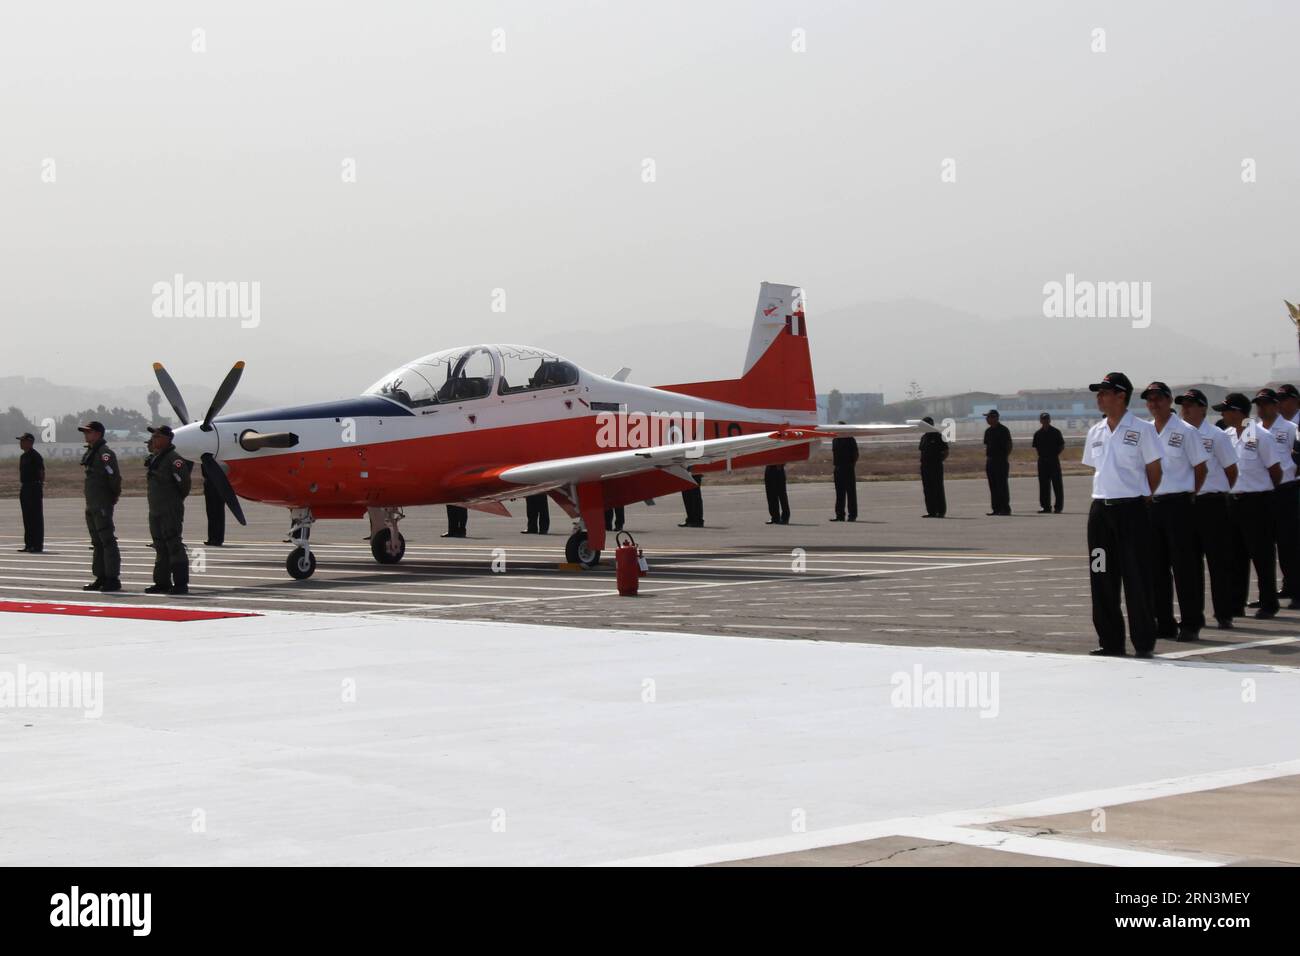 (150422) -- LIMA, 21. April 2015 -- Foto aufgenommen am 21. April 2015 zeigt das erste KT-1P-Flugzeug während der Preisverleihung auf dem Flugplatz Las Palmas im Bezirk Santiago de Surco, Departement Lima, Peru. Der peruanische Präsident Ollanta Humala und sein südkoreanischer Amtskollege Park Geun-hye nahmen an der Preisverleihung des ersten KT-1P-Flugzeugs Teil, das in Südkorea hergestellt und in Peru komplett montiert wurde. Luis Camacho)(zhf) PERU-LIMA-KOREA-PRÄSIDENT-FLUGZEUG-PRÄSENTATION ZEREMONIE e LuisxCamacho PUBLICATIONxNOTxINxCHN Lima April 21 2015 Foto aufgenommen AM 21. April 2015 zeigt die Firs Stockfoto